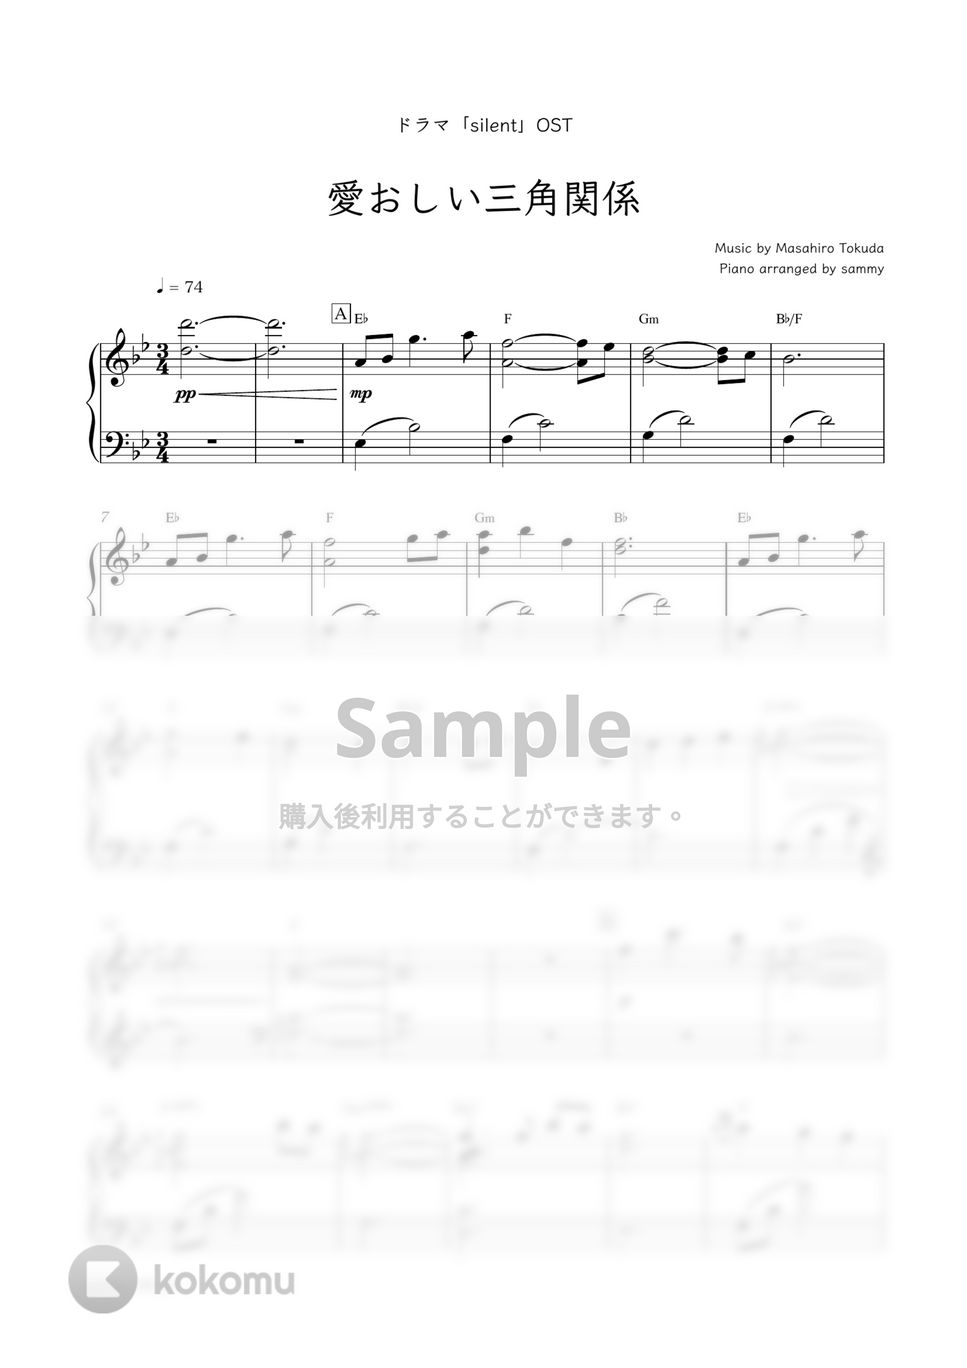 ドラマ『silent』OST - 愛おしい三角関係 by sammy